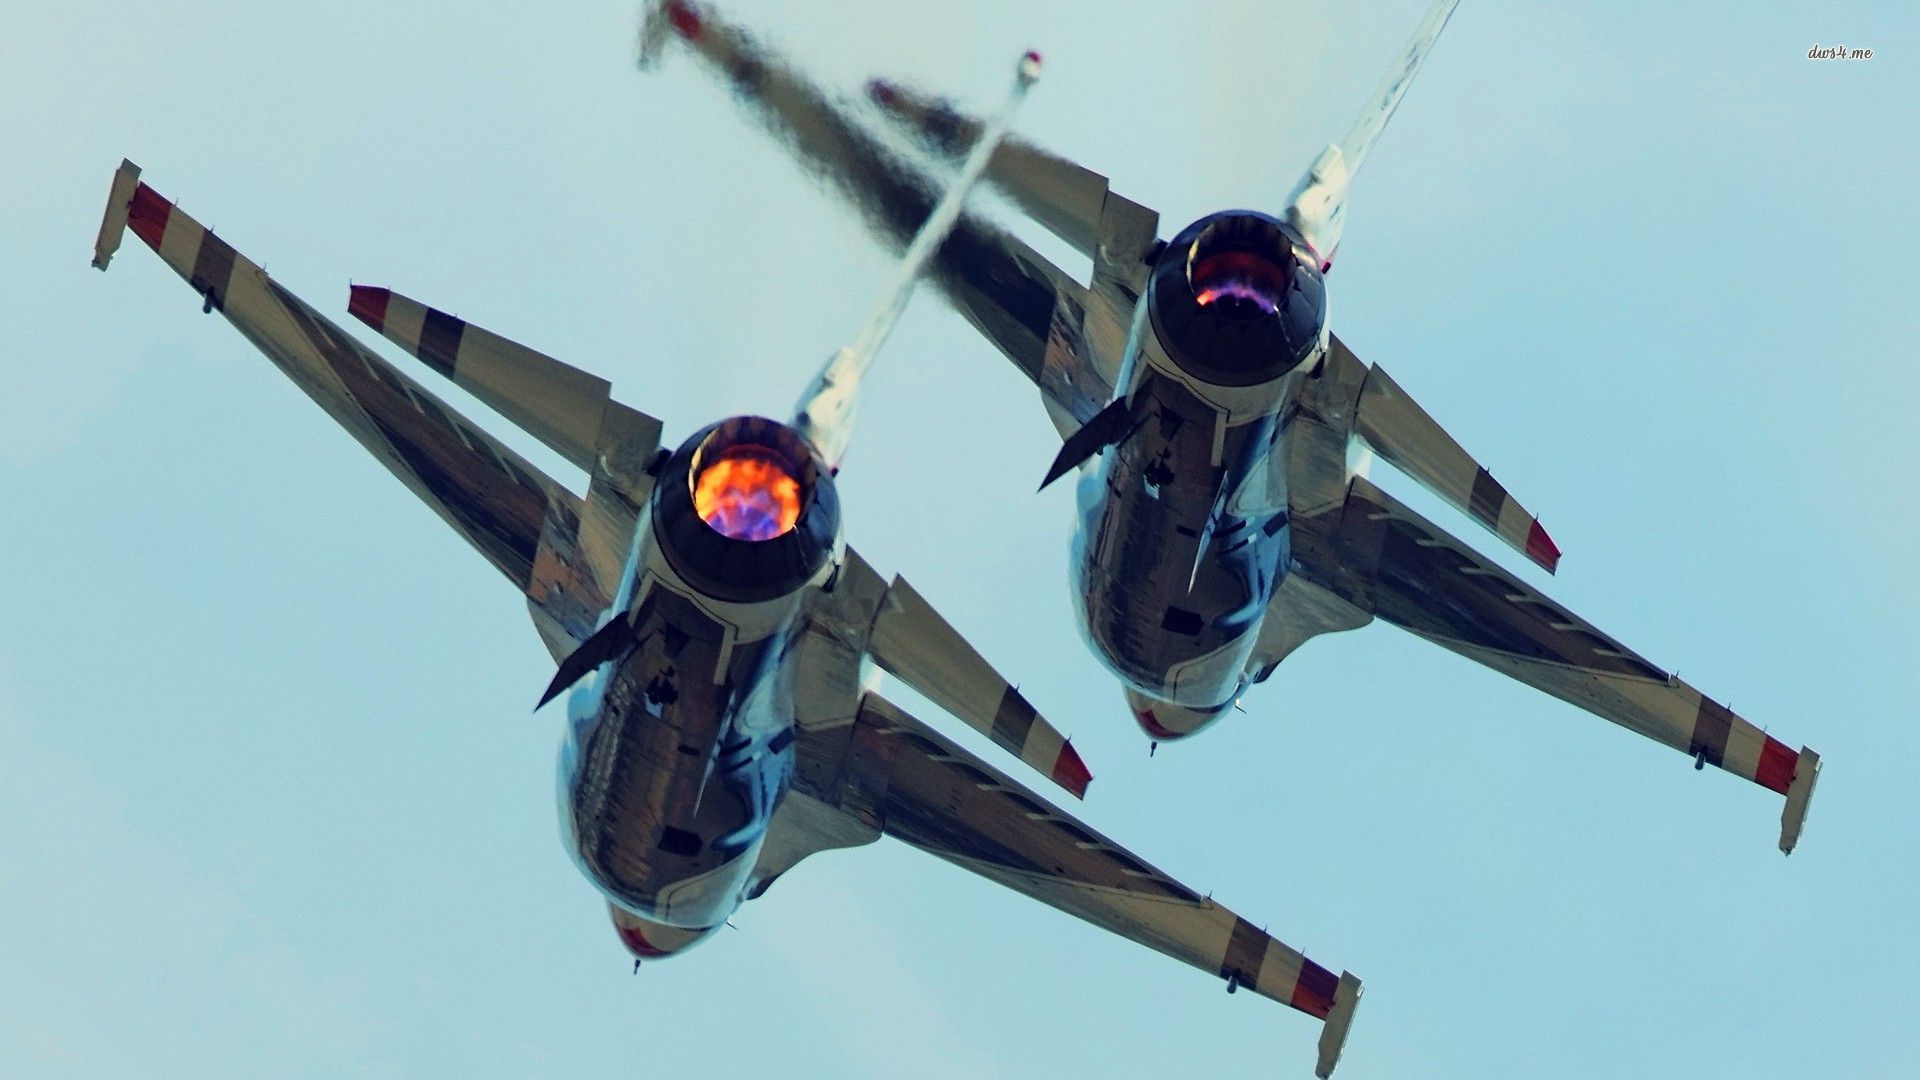 Скачать обои бесплатно Военные, Аэроплан, General Dynamics F 16 Файтинг Фэлкон, Реактивные Истребители картинка на рабочий стол ПК